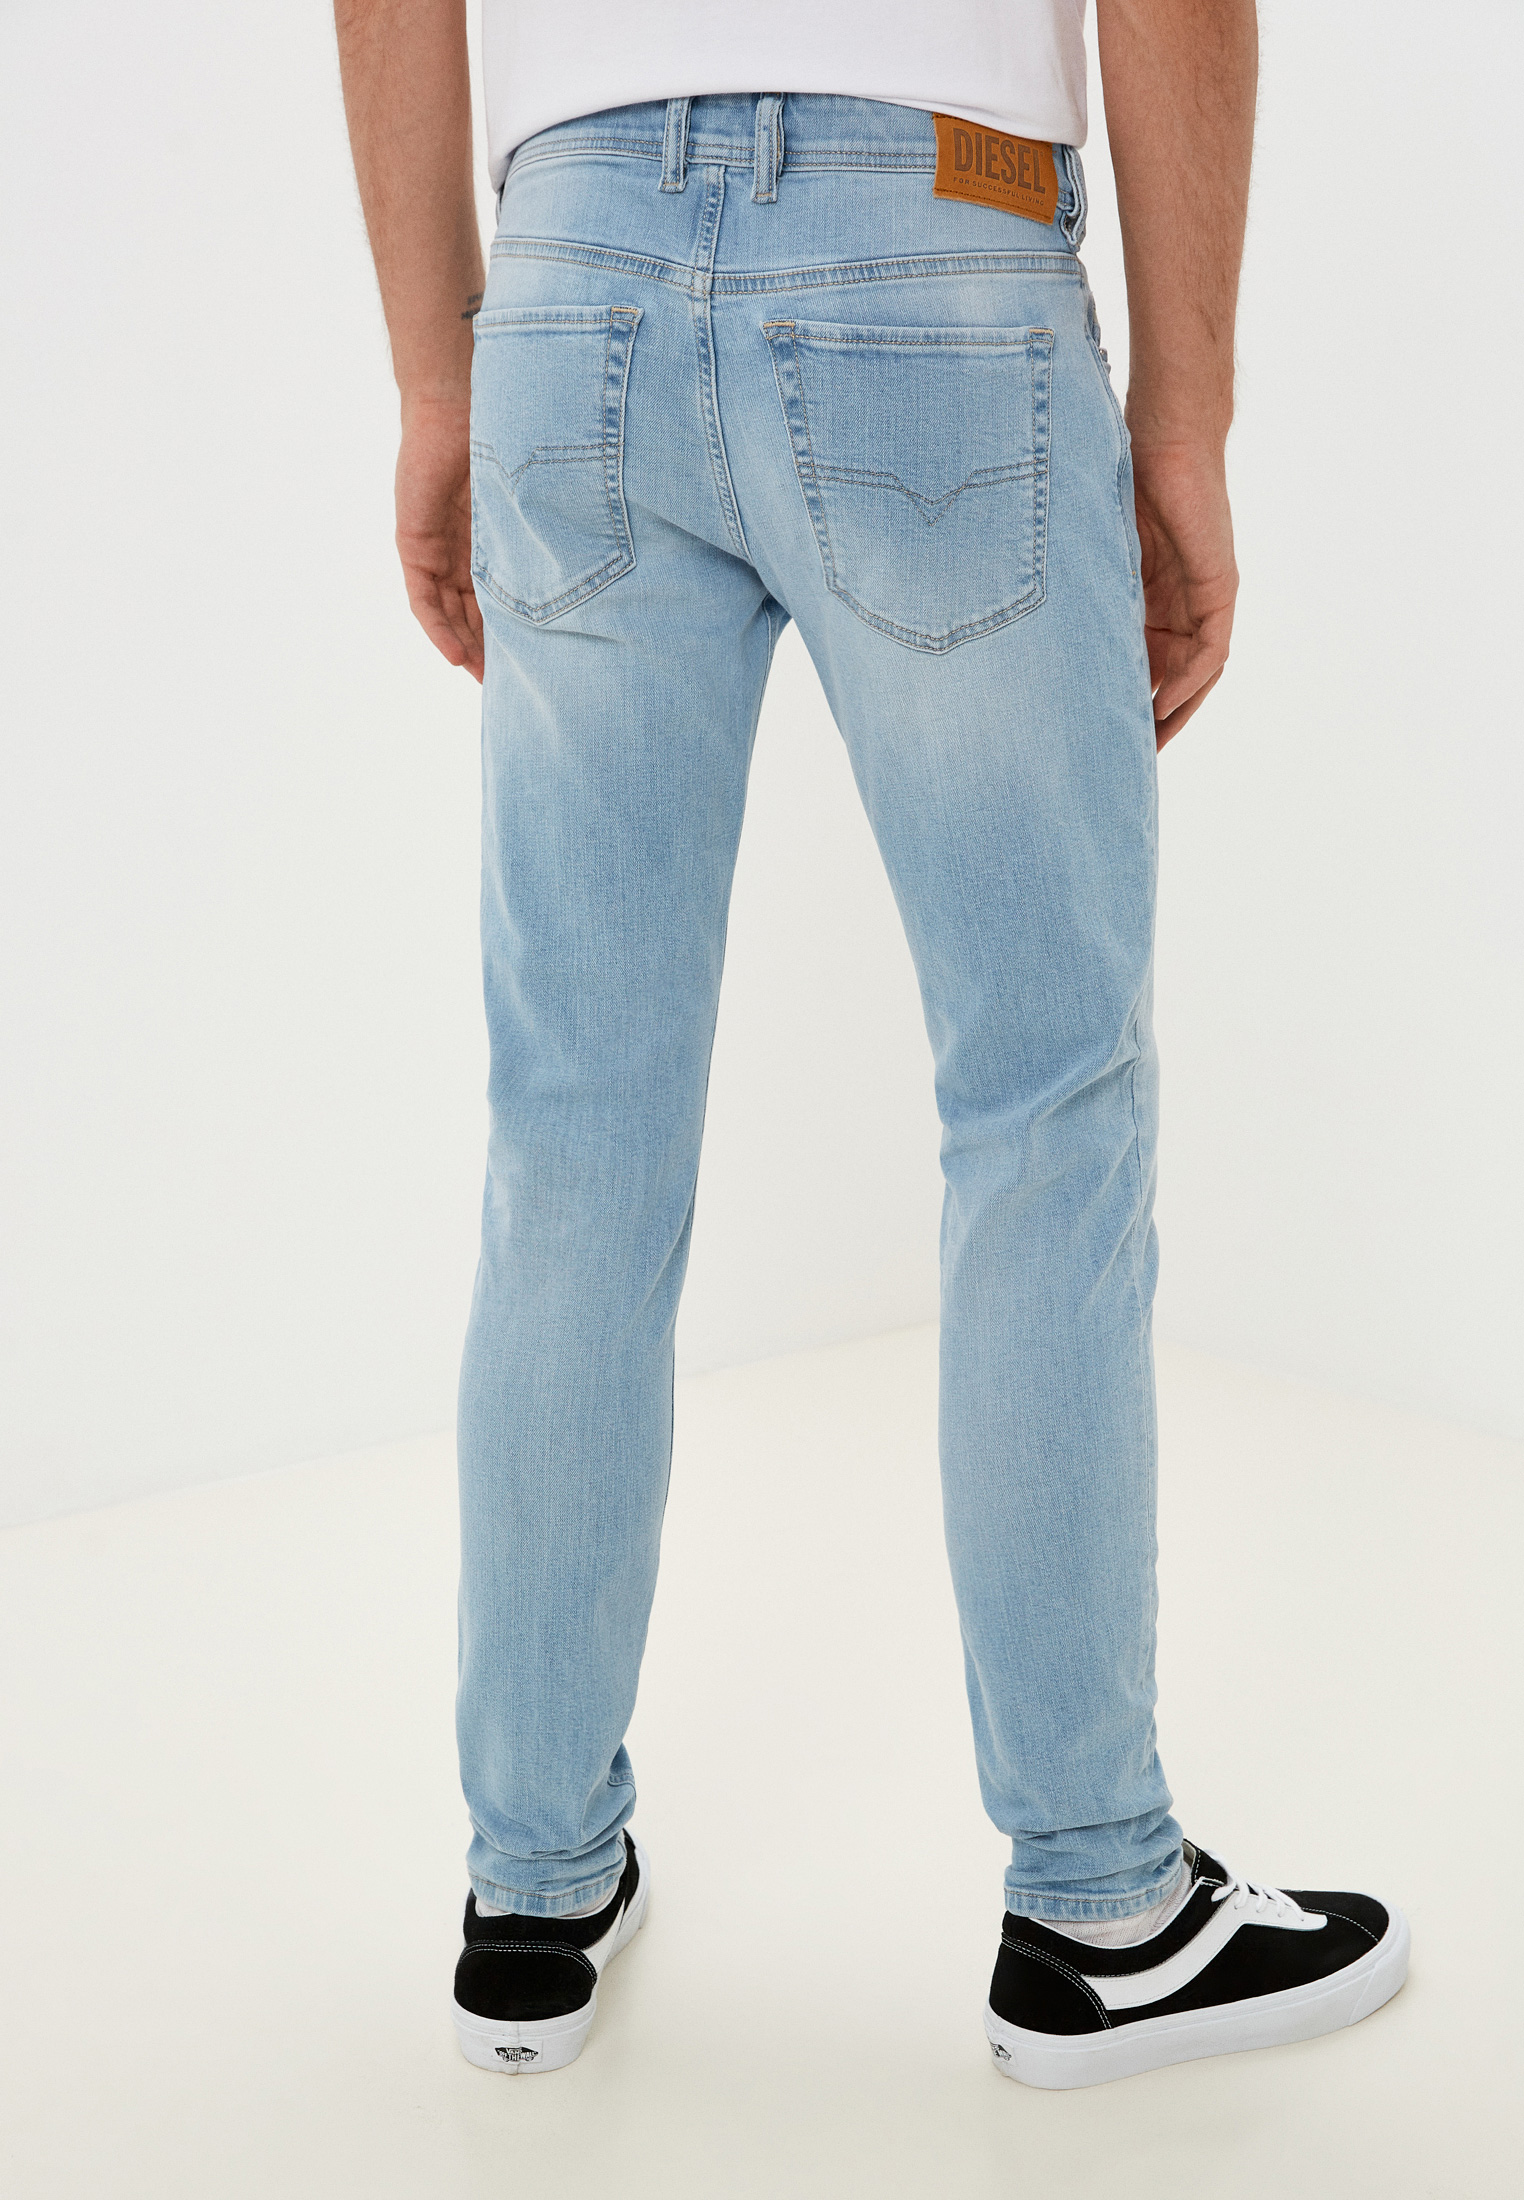 Мужские зауженные джинсы Diesel (Дизель) 00SWJF009BJ: изображение 3